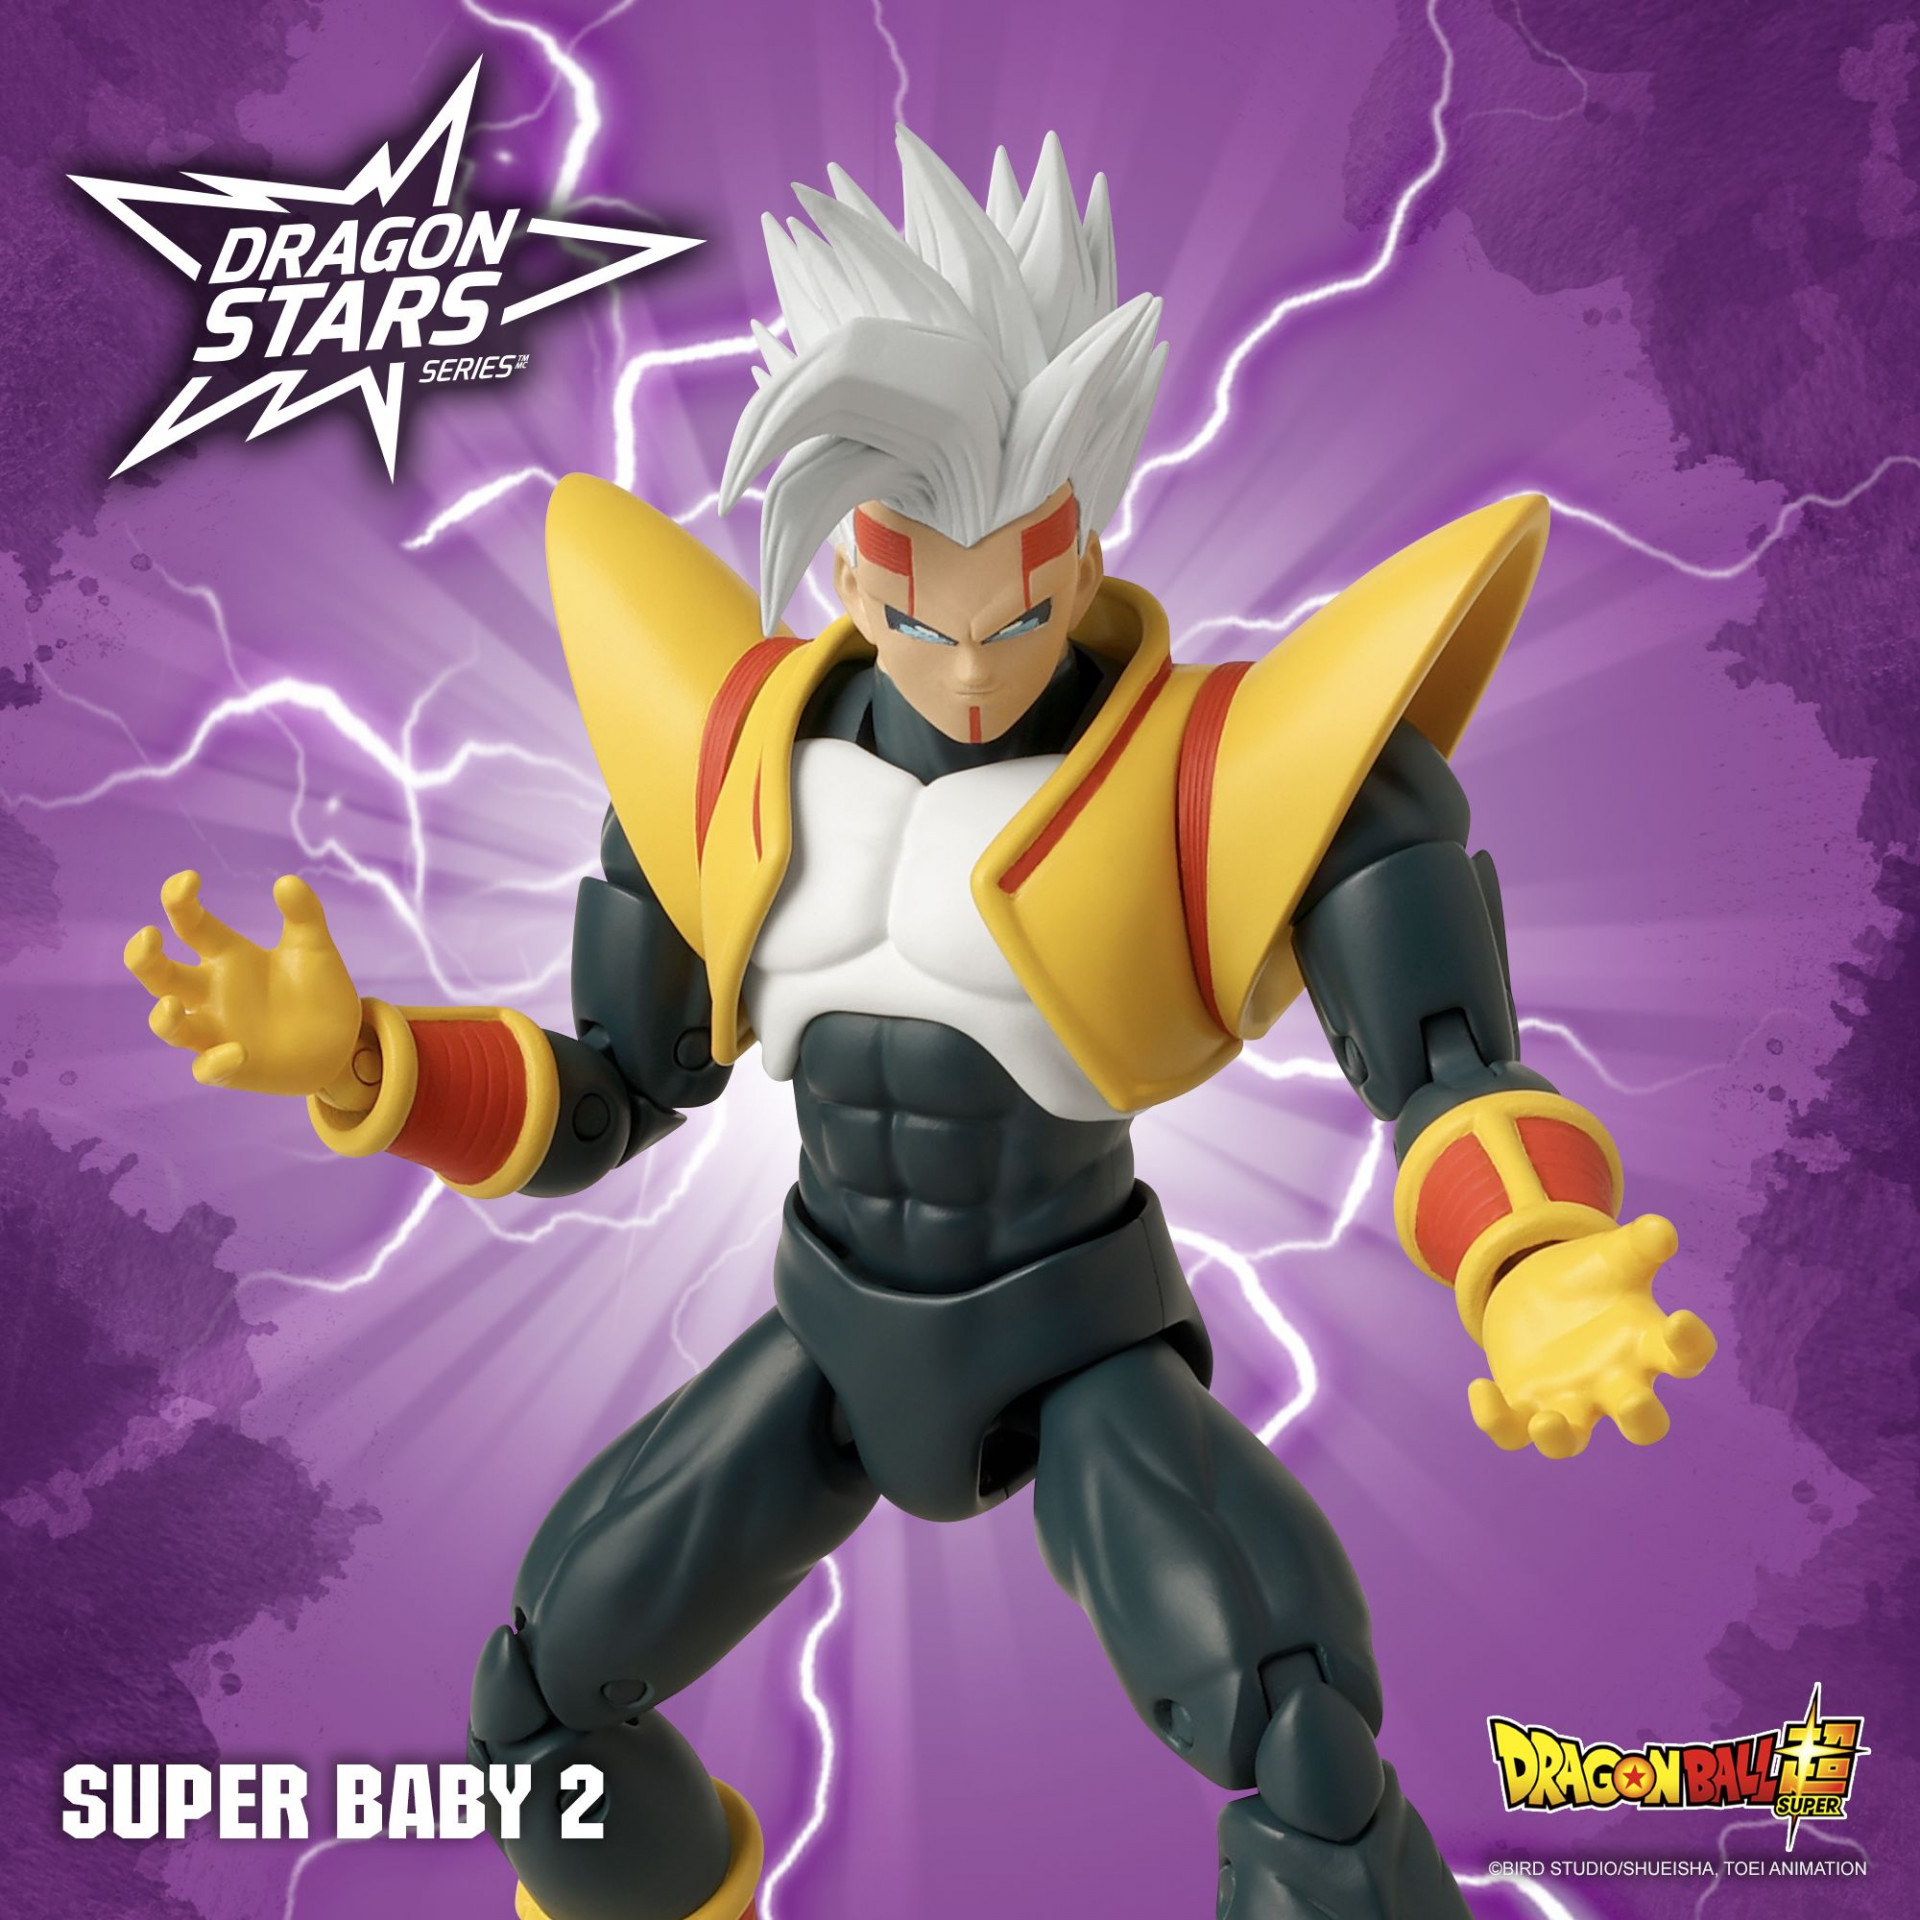 ¡Super Baby 2 llega a la serie Dragon Stars !